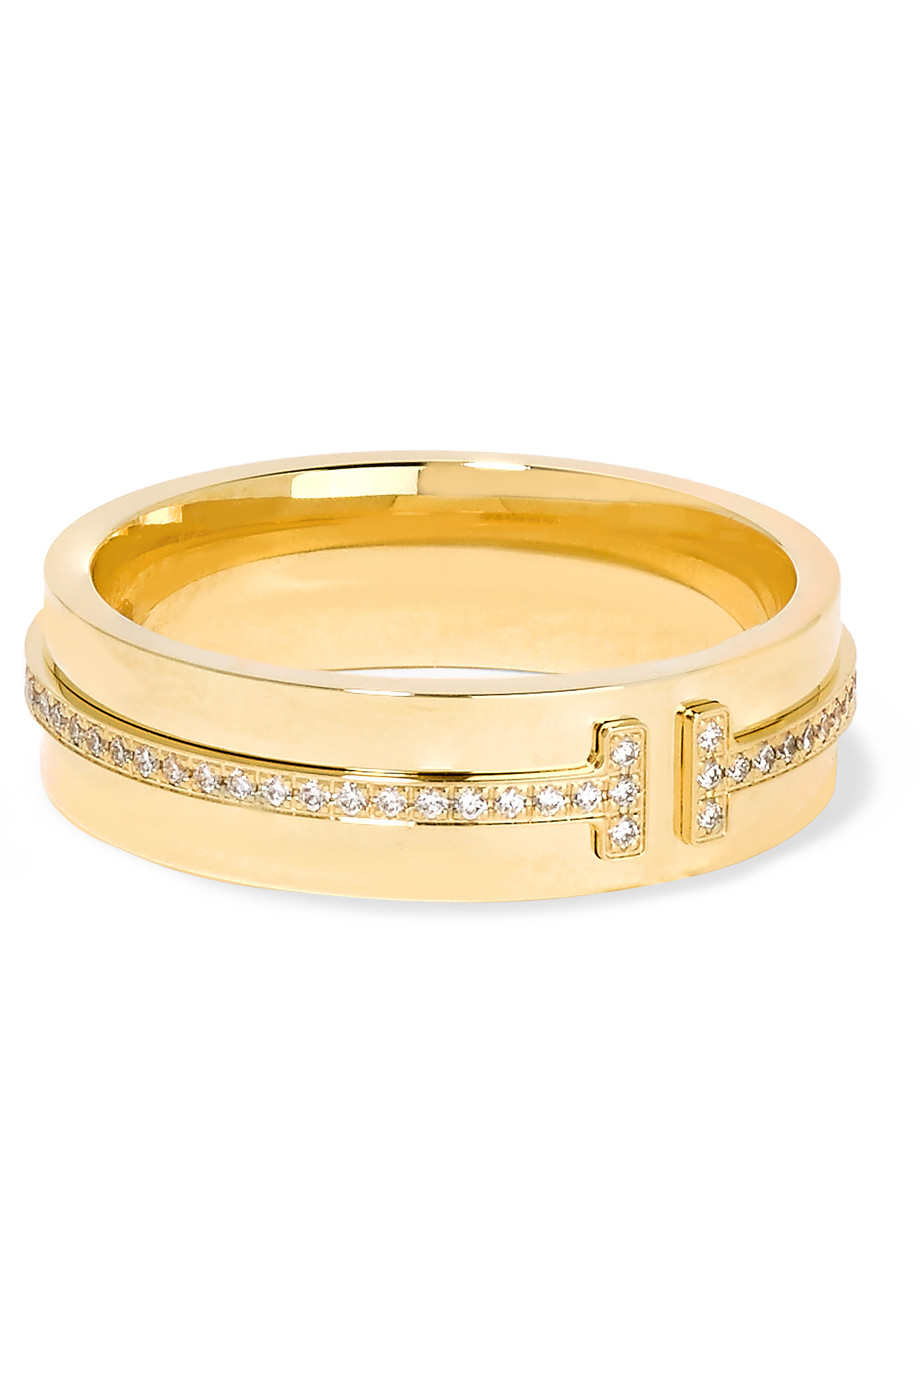 Tiffany gold. Золотые кольца Тиффани. Кольцо Тиффани белое золото 18 карат. Золотое кольцо Tiffany.